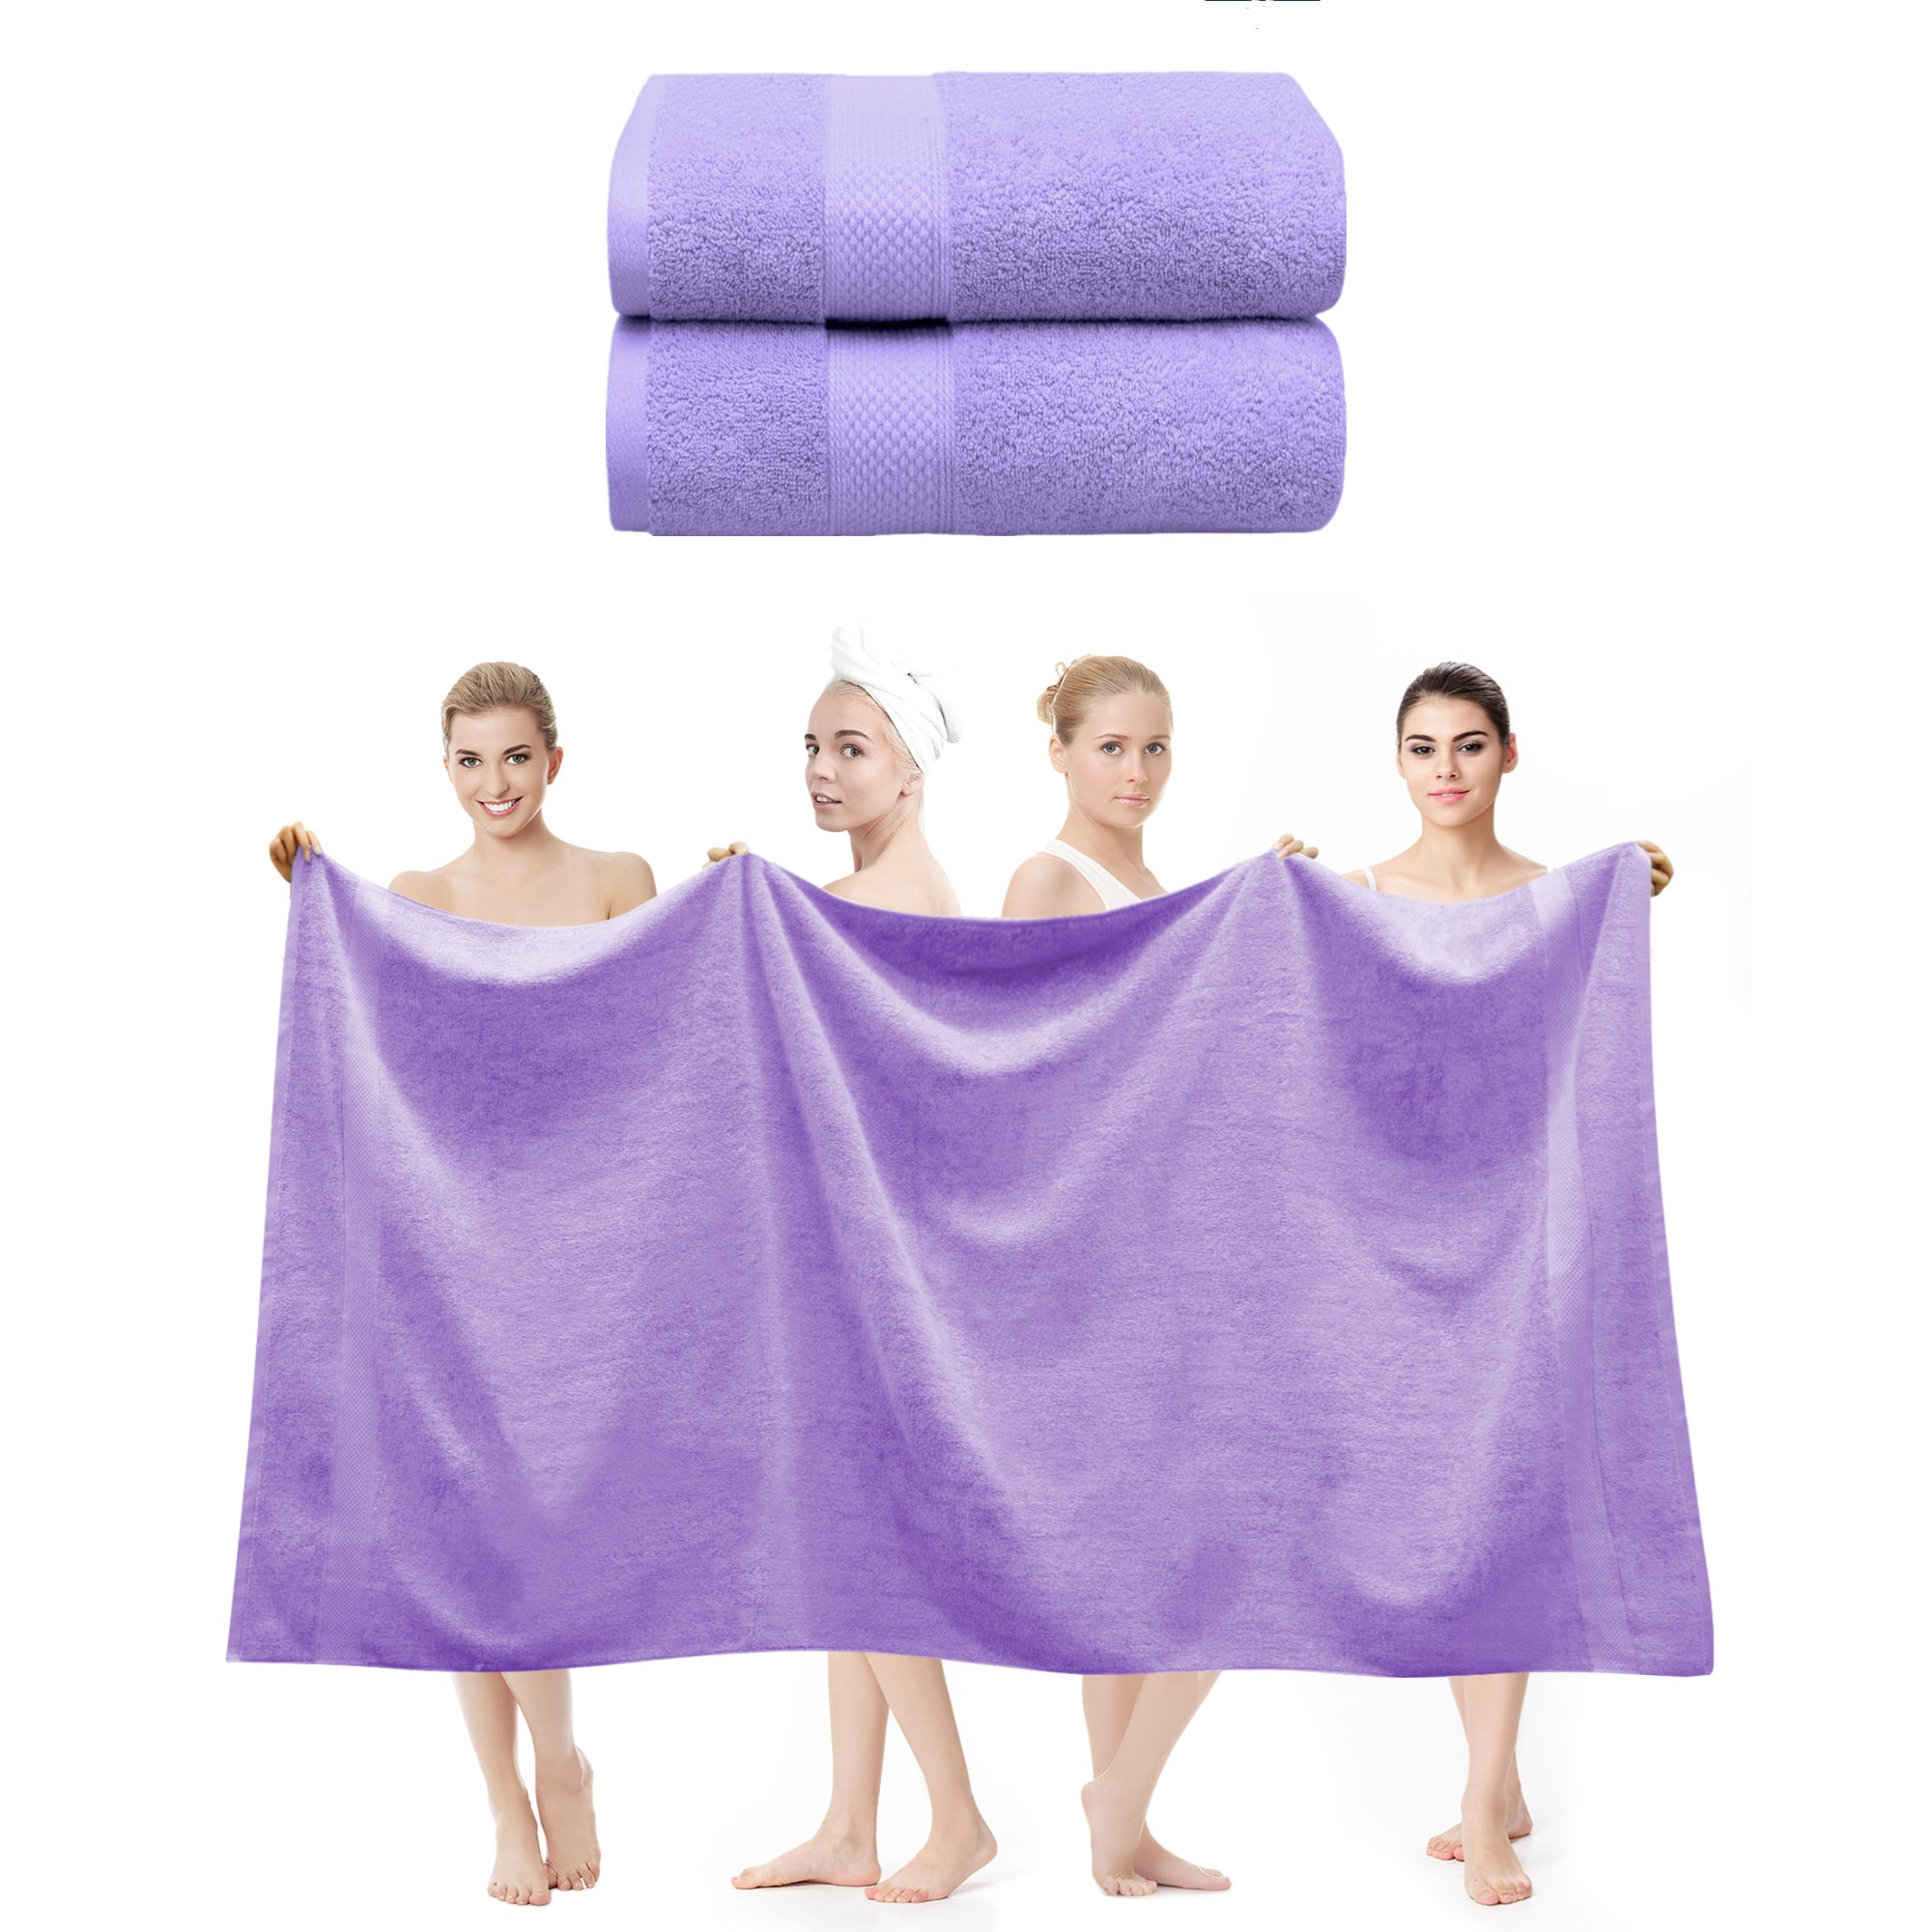 2 Pieces 650 GSM 100% Cotton Bath Sheet Set lavender